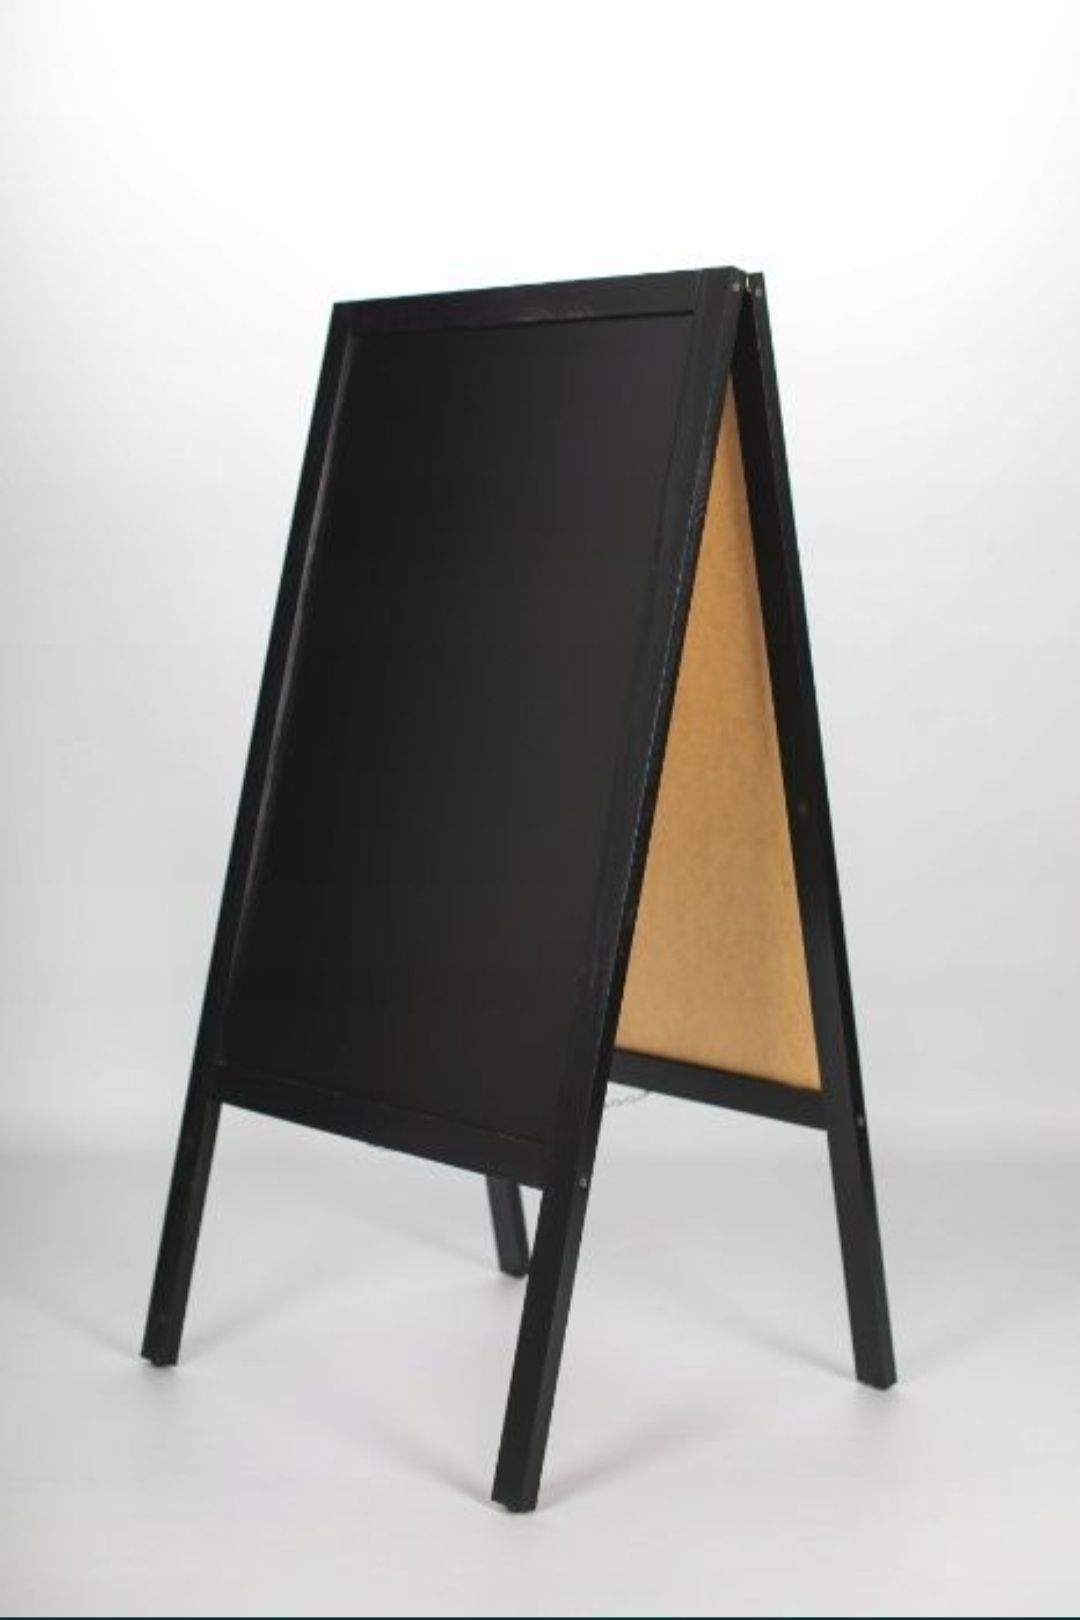 Potykacz reklamowy drewniany - Tablica kredowa o rozmiarze 117x60 cm